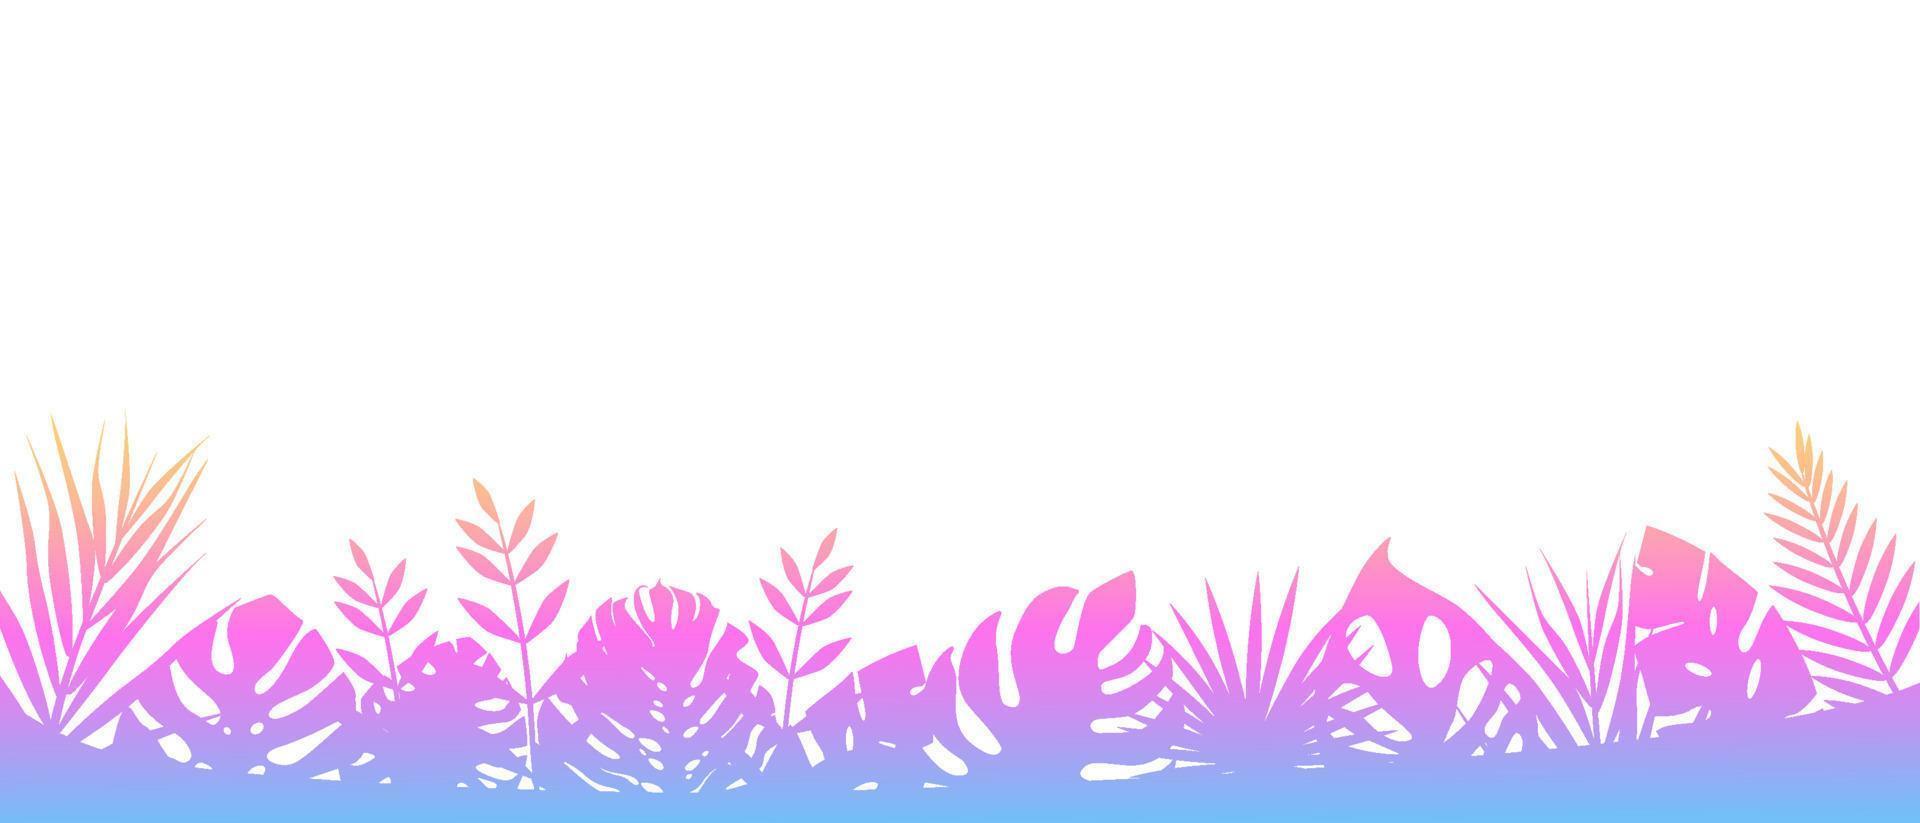 fond de fougère rose. décoration horizontale de fond exotique floral de jungle tropicale avec des feuilles de fougère élégantes, prairie naturelle sauvage dans les rayons du soleil vecteur levant.